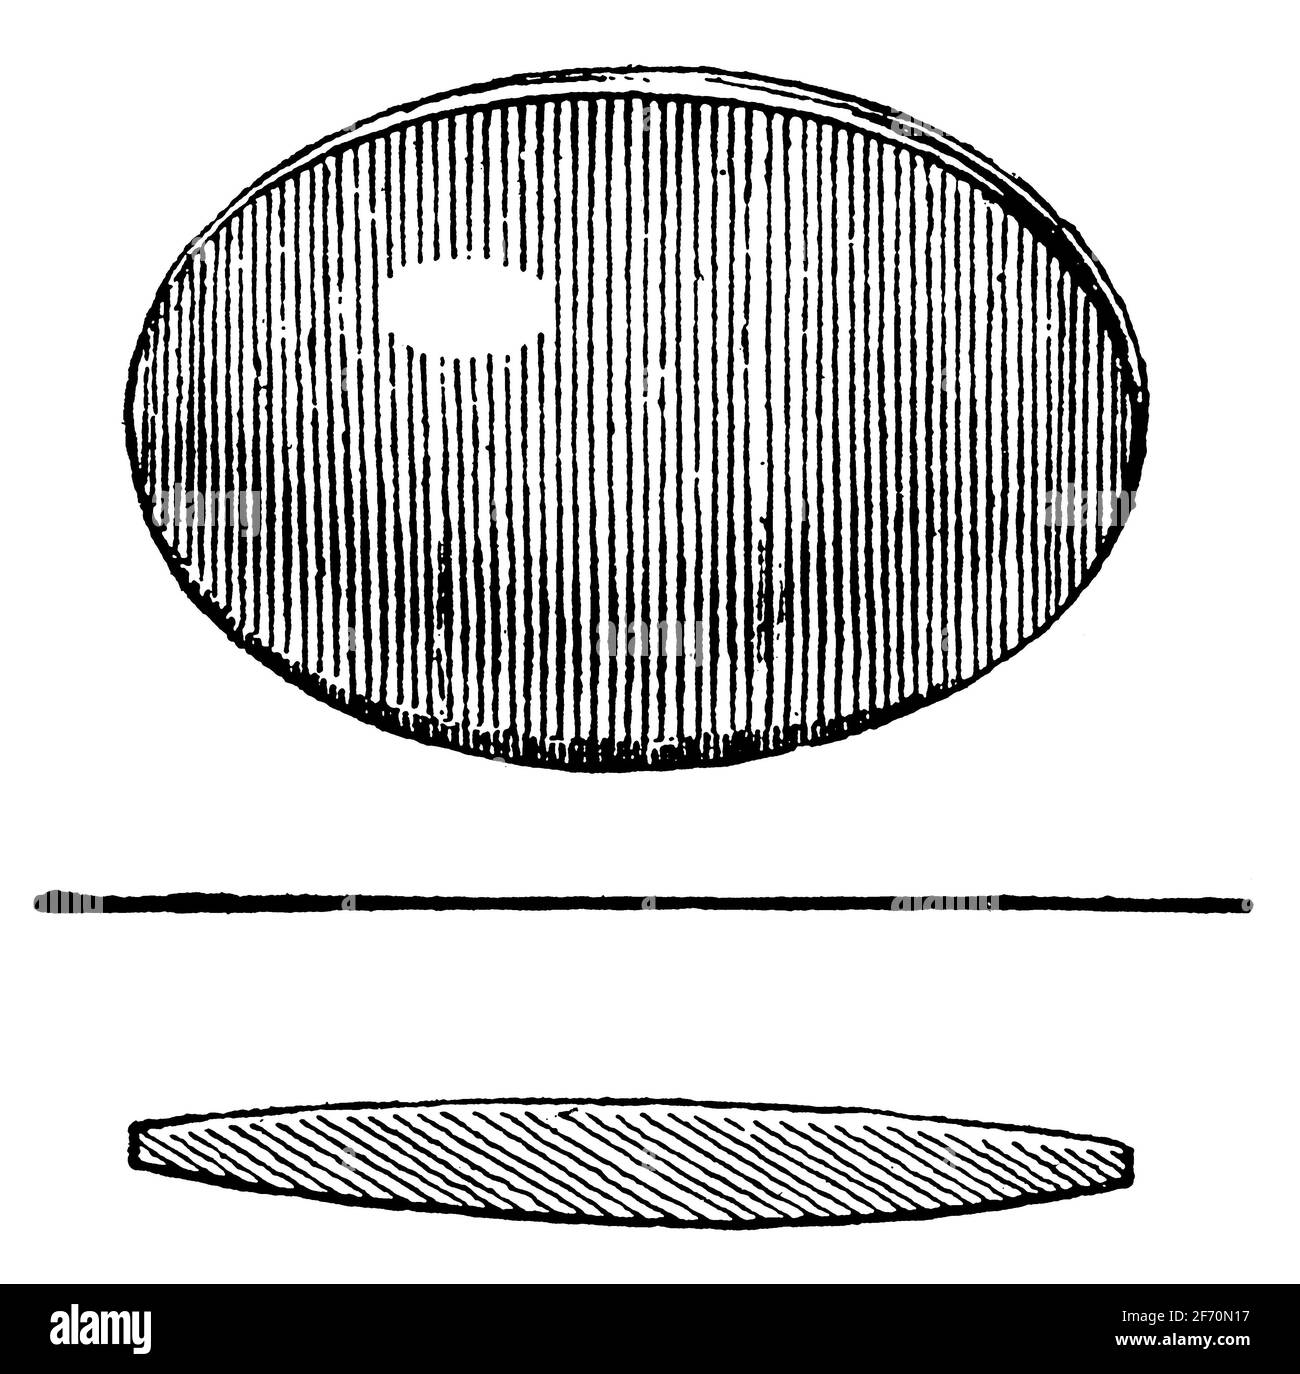 Concave convex Banque d'images détourées - Alamy